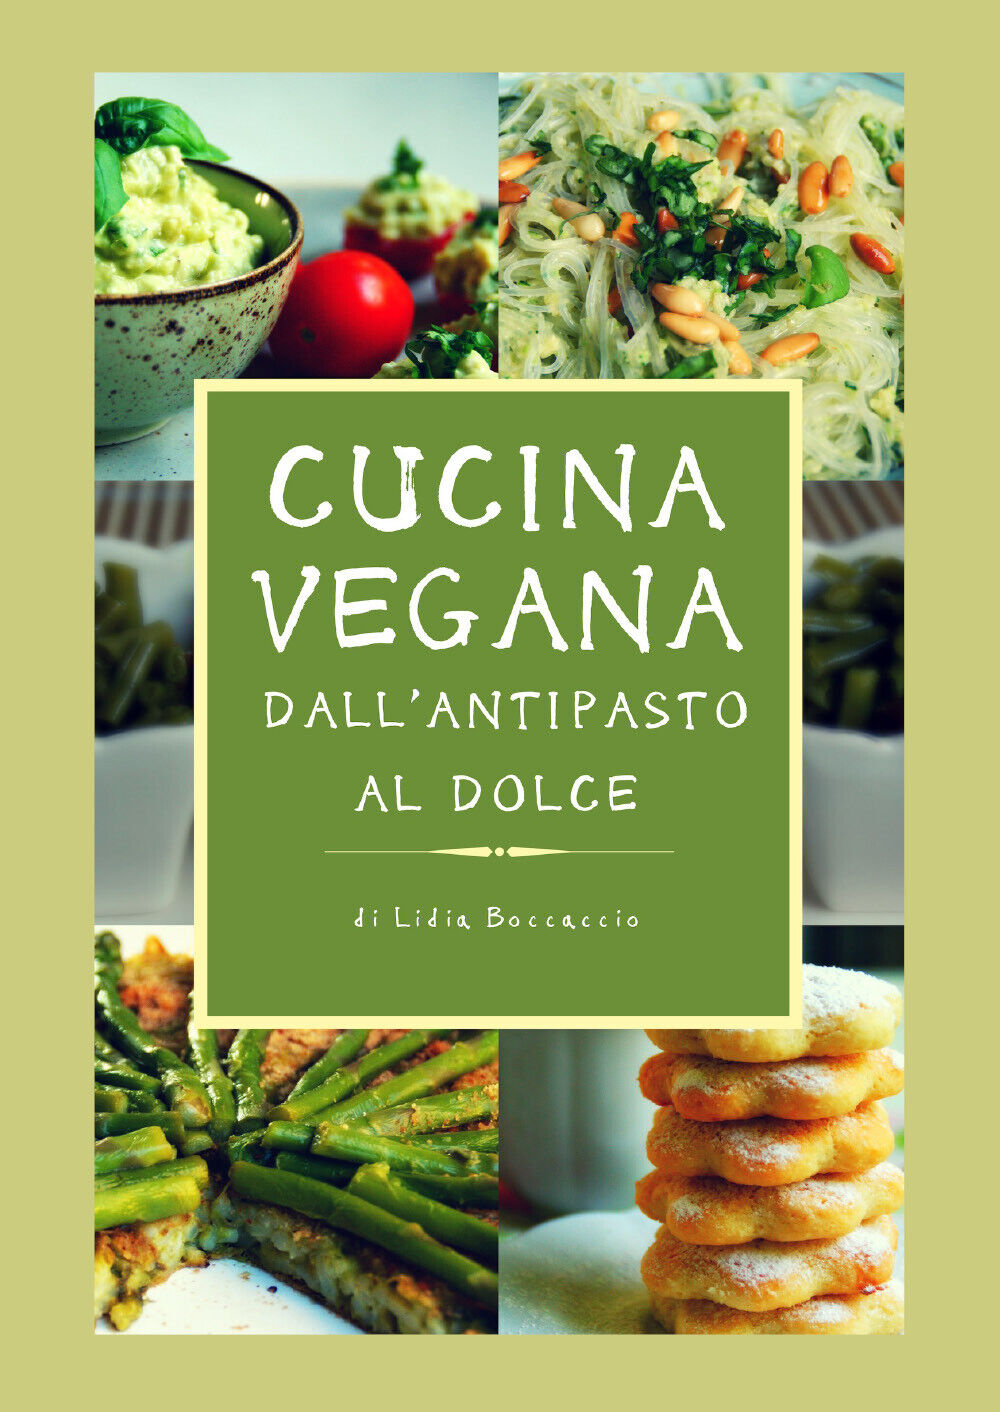 Cucina vegana dalL'antipasto al dolce  di Lidia Boccaccio,  2018,  Youcanprint